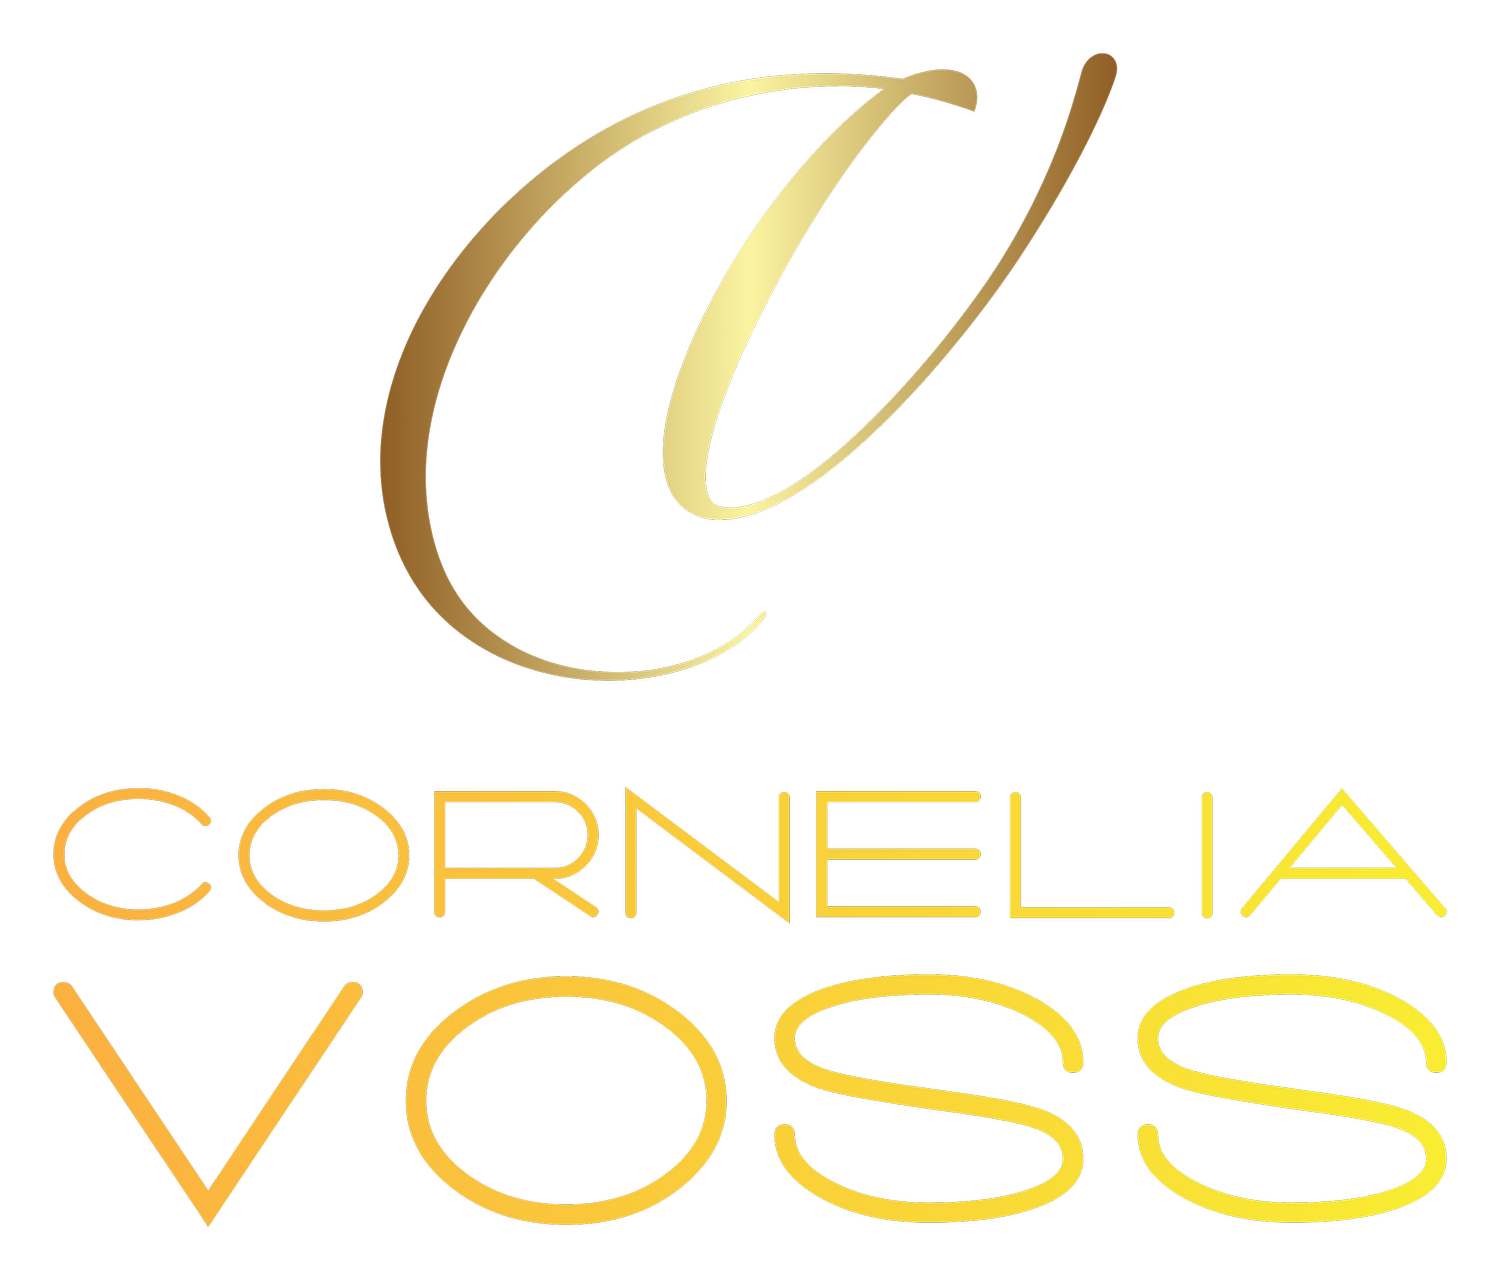 Cornelia Voss